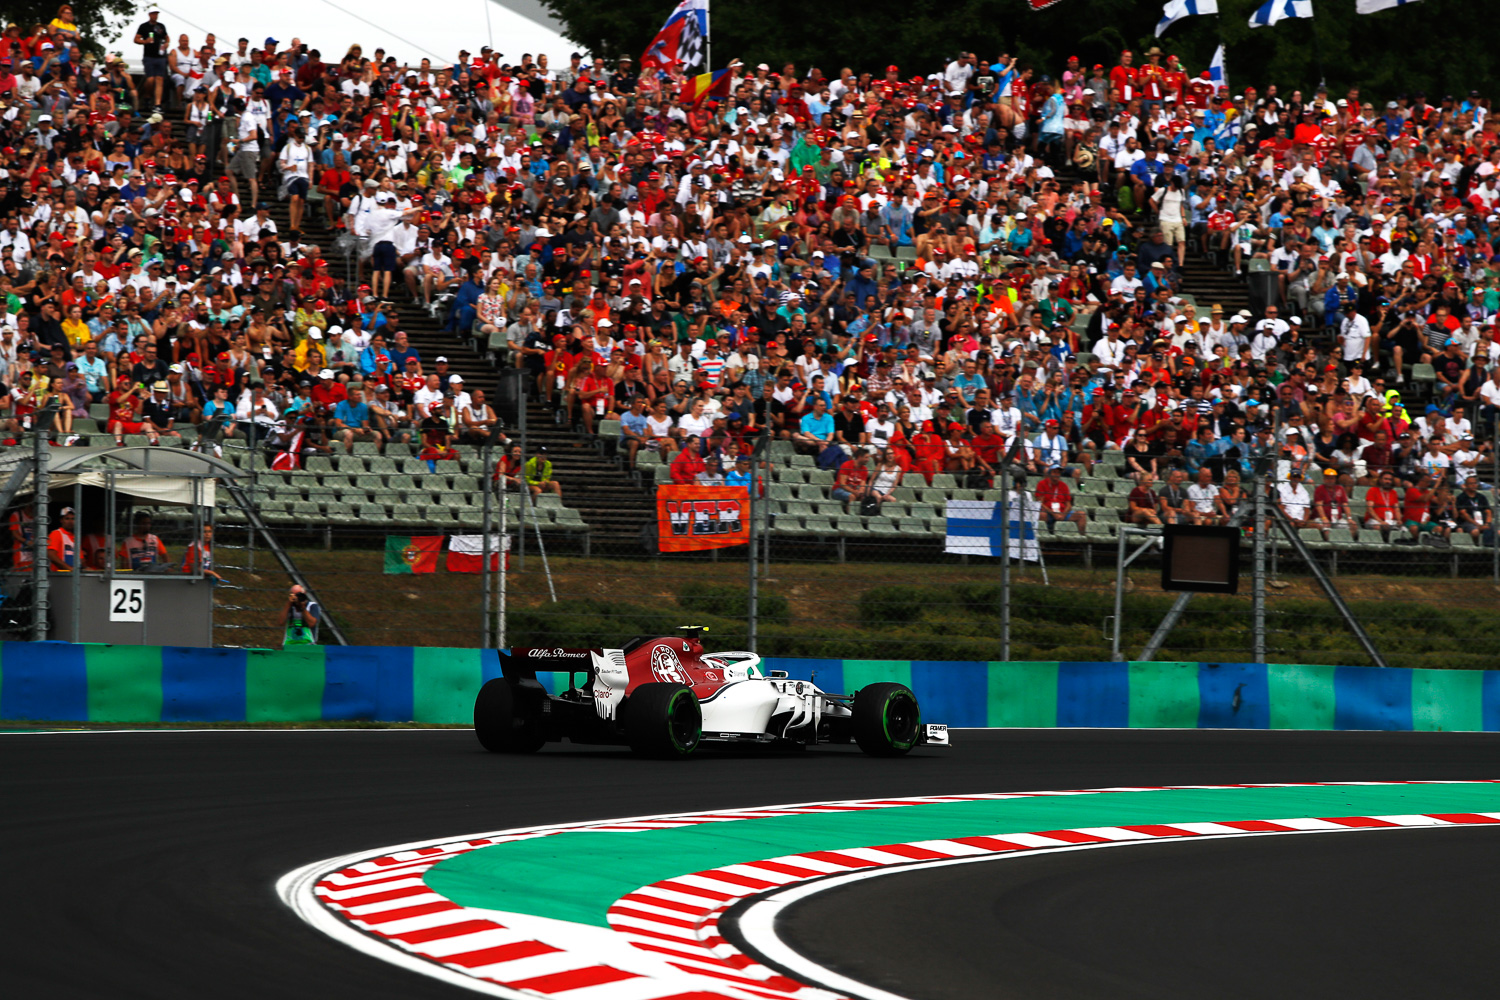 29/07/18 - Hungaroring - Hungarian Grand Prix - Charles Leclerc